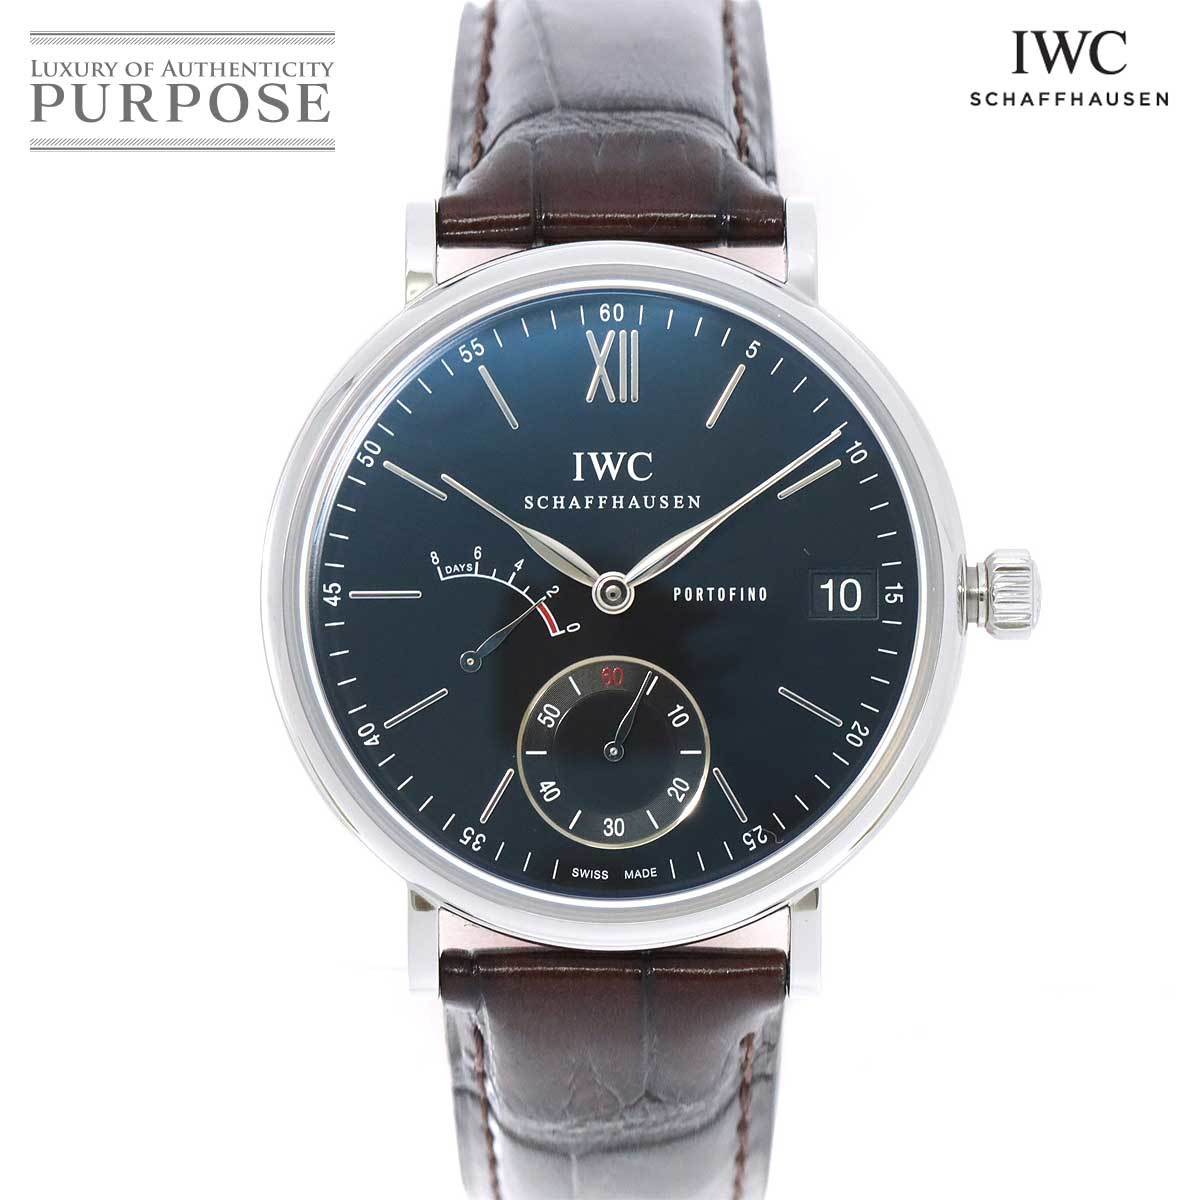 IWC ポートフィノ ハンドワインド 8デイズ IW510102 メンズ 腕時計 手巻き インターナショナル ウォッチ カンパニー Portofino 90174245